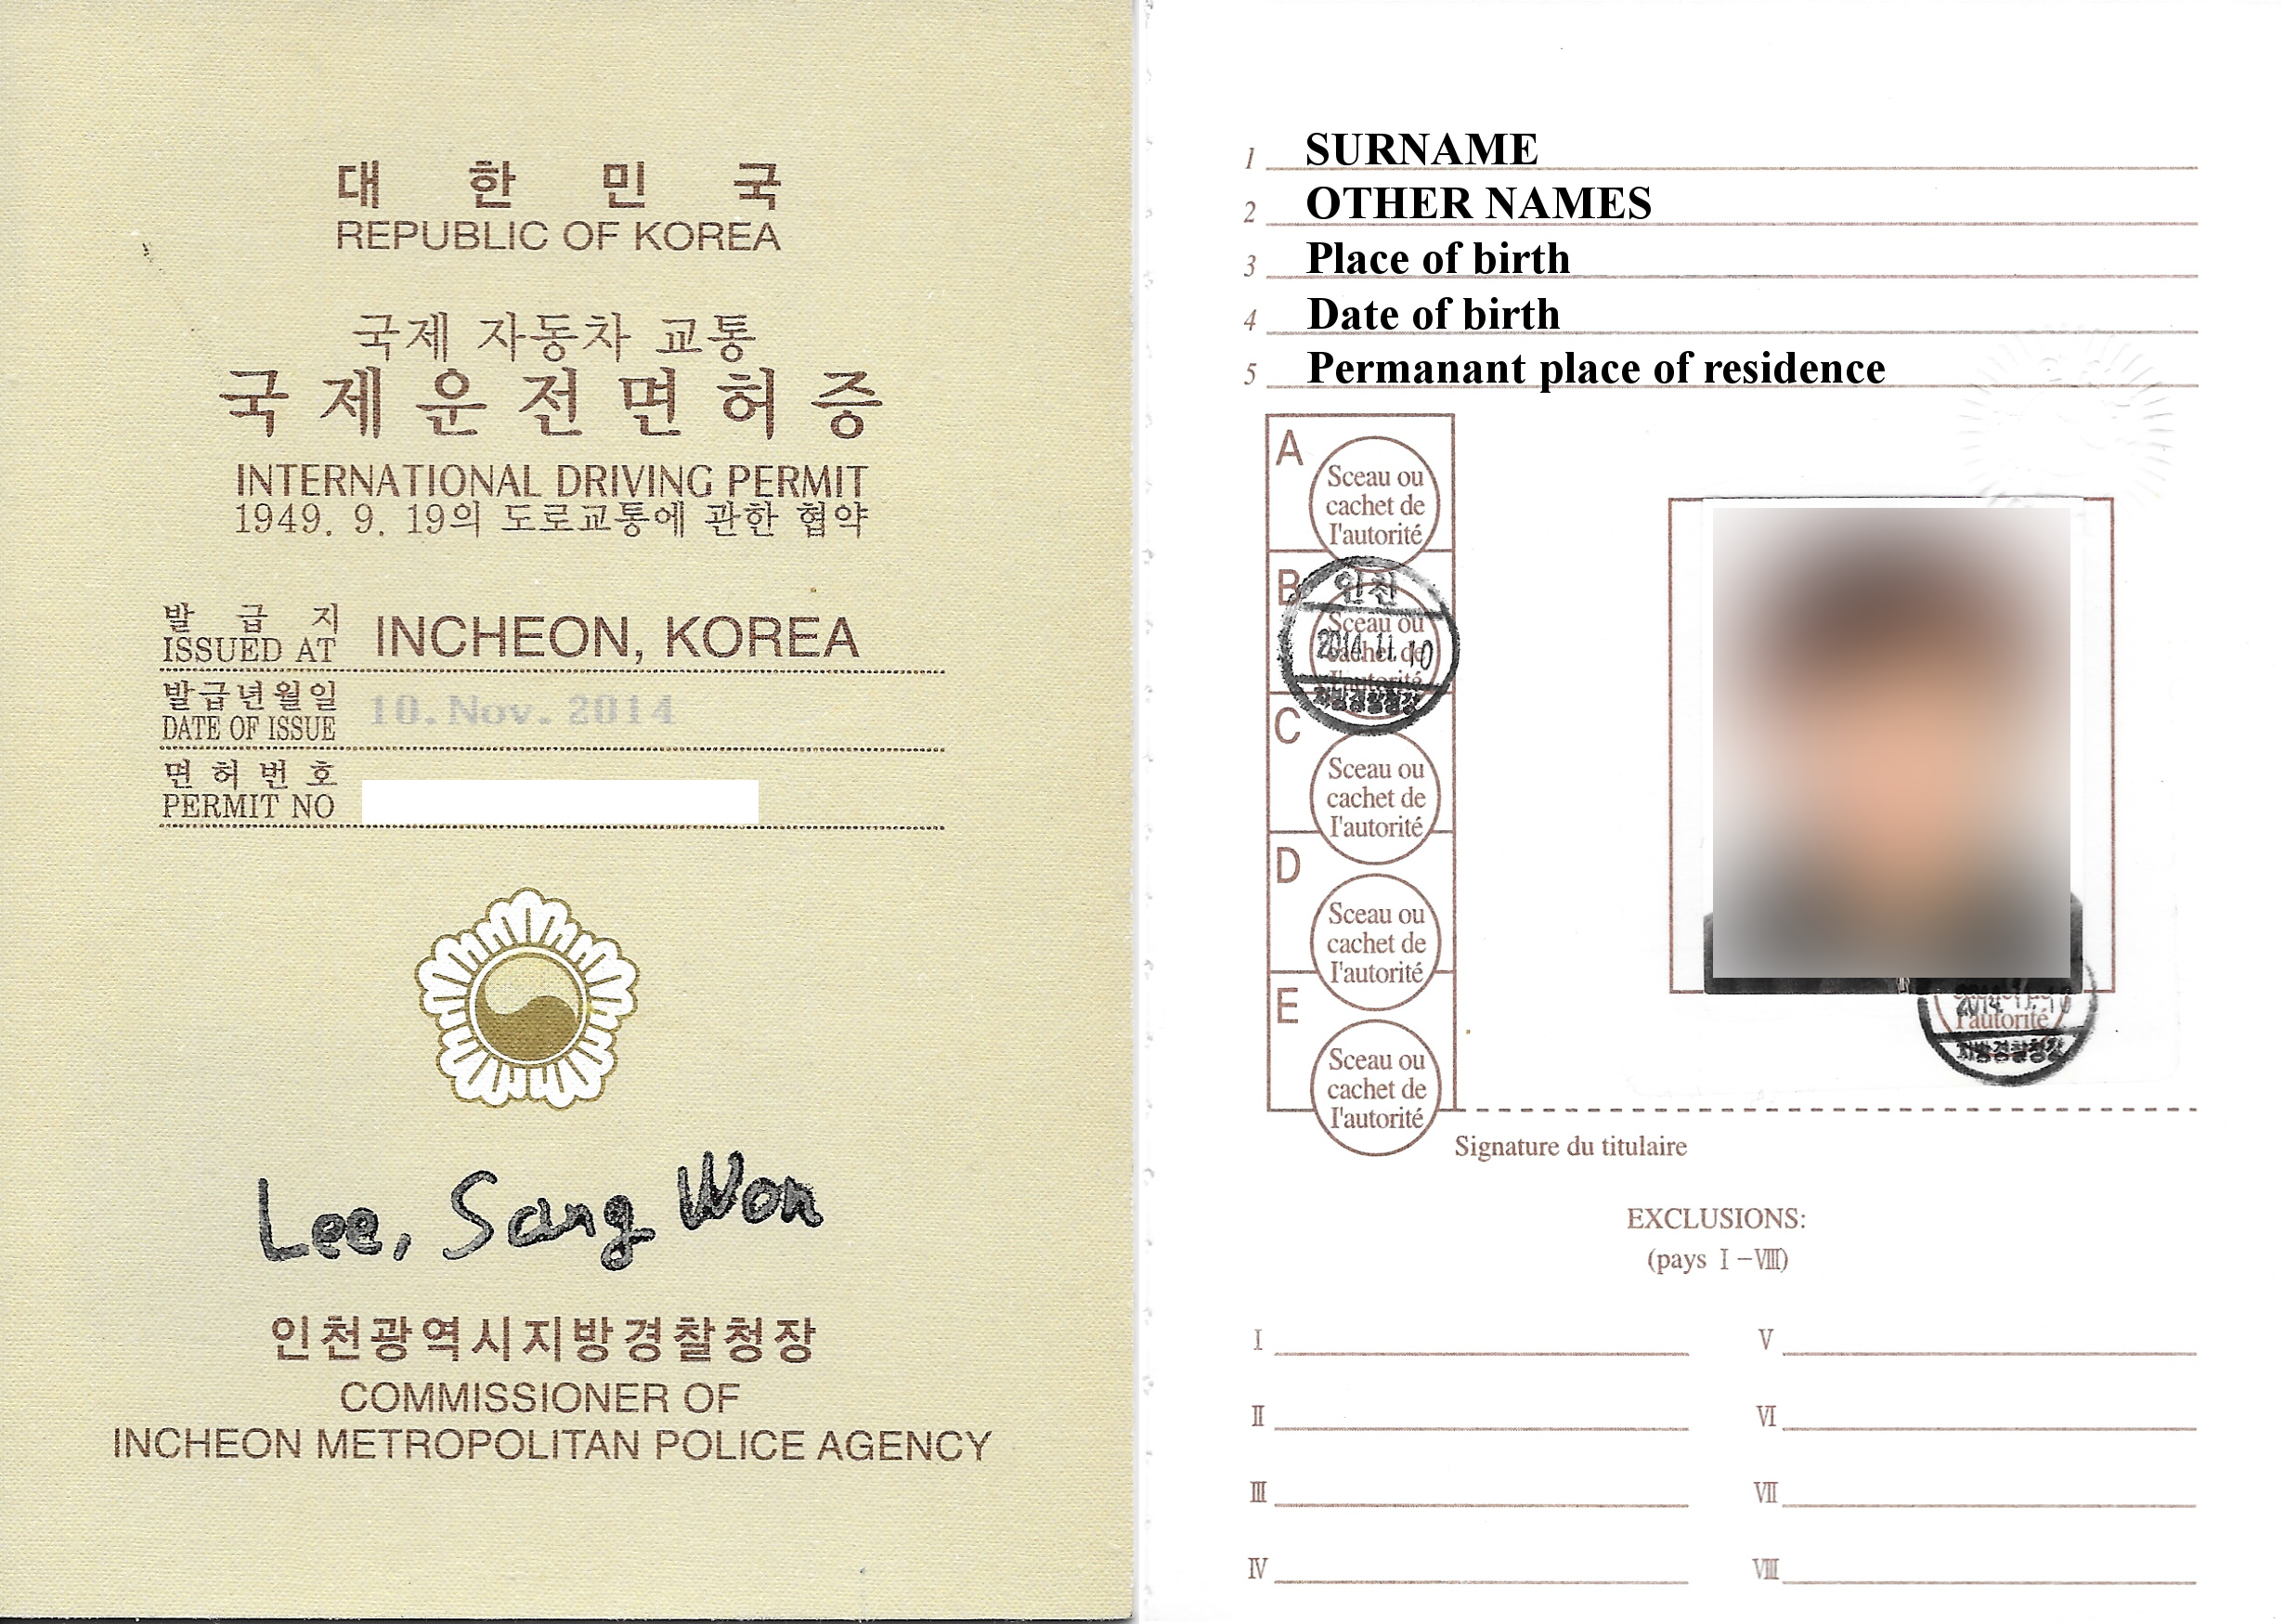 베트남에서 운전면허증 발급받기(발급 절차 및 교통 단속 시 유의사항) - 글 - Heykorean 커뮤니티